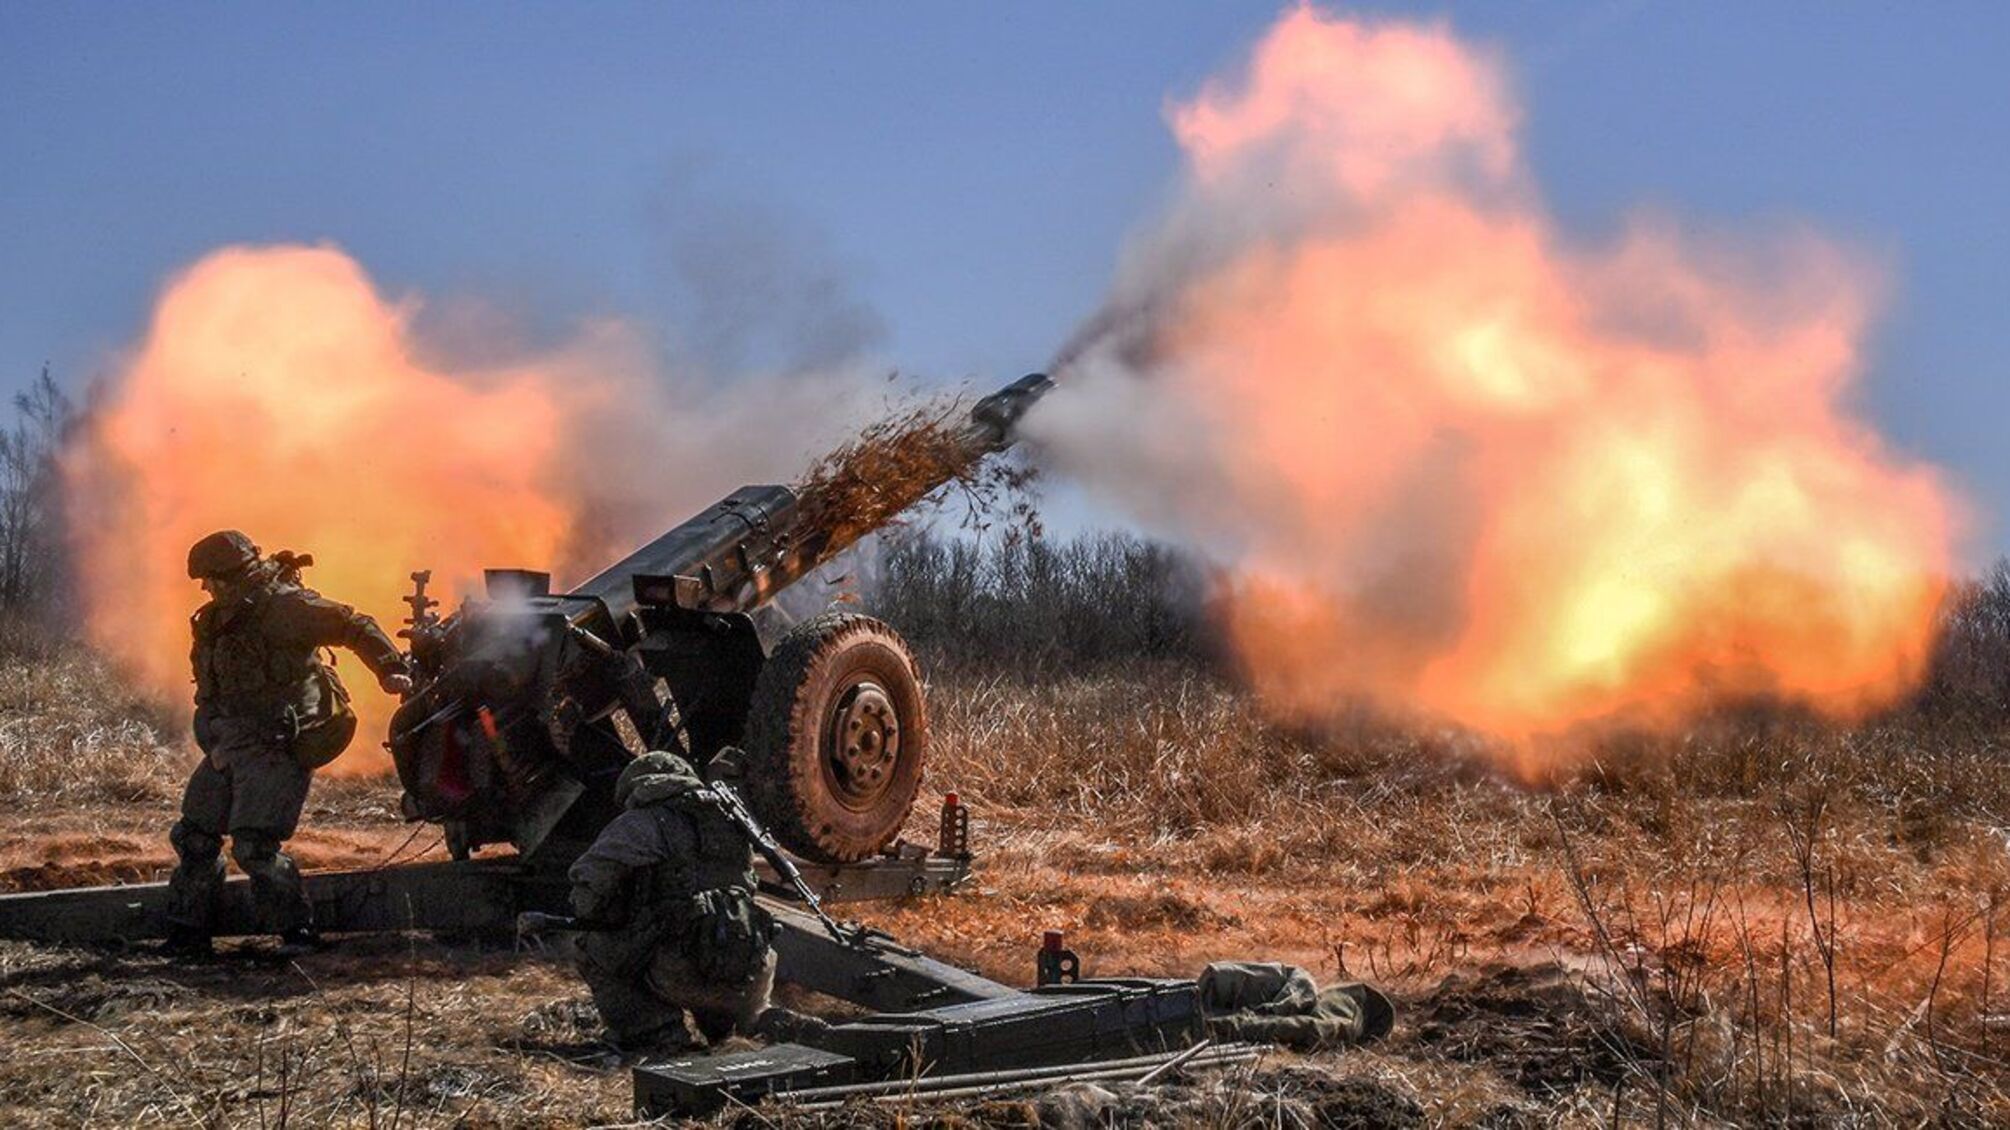 Півсотні снарядів за добу: прикордонники про обстріли північного кордону України